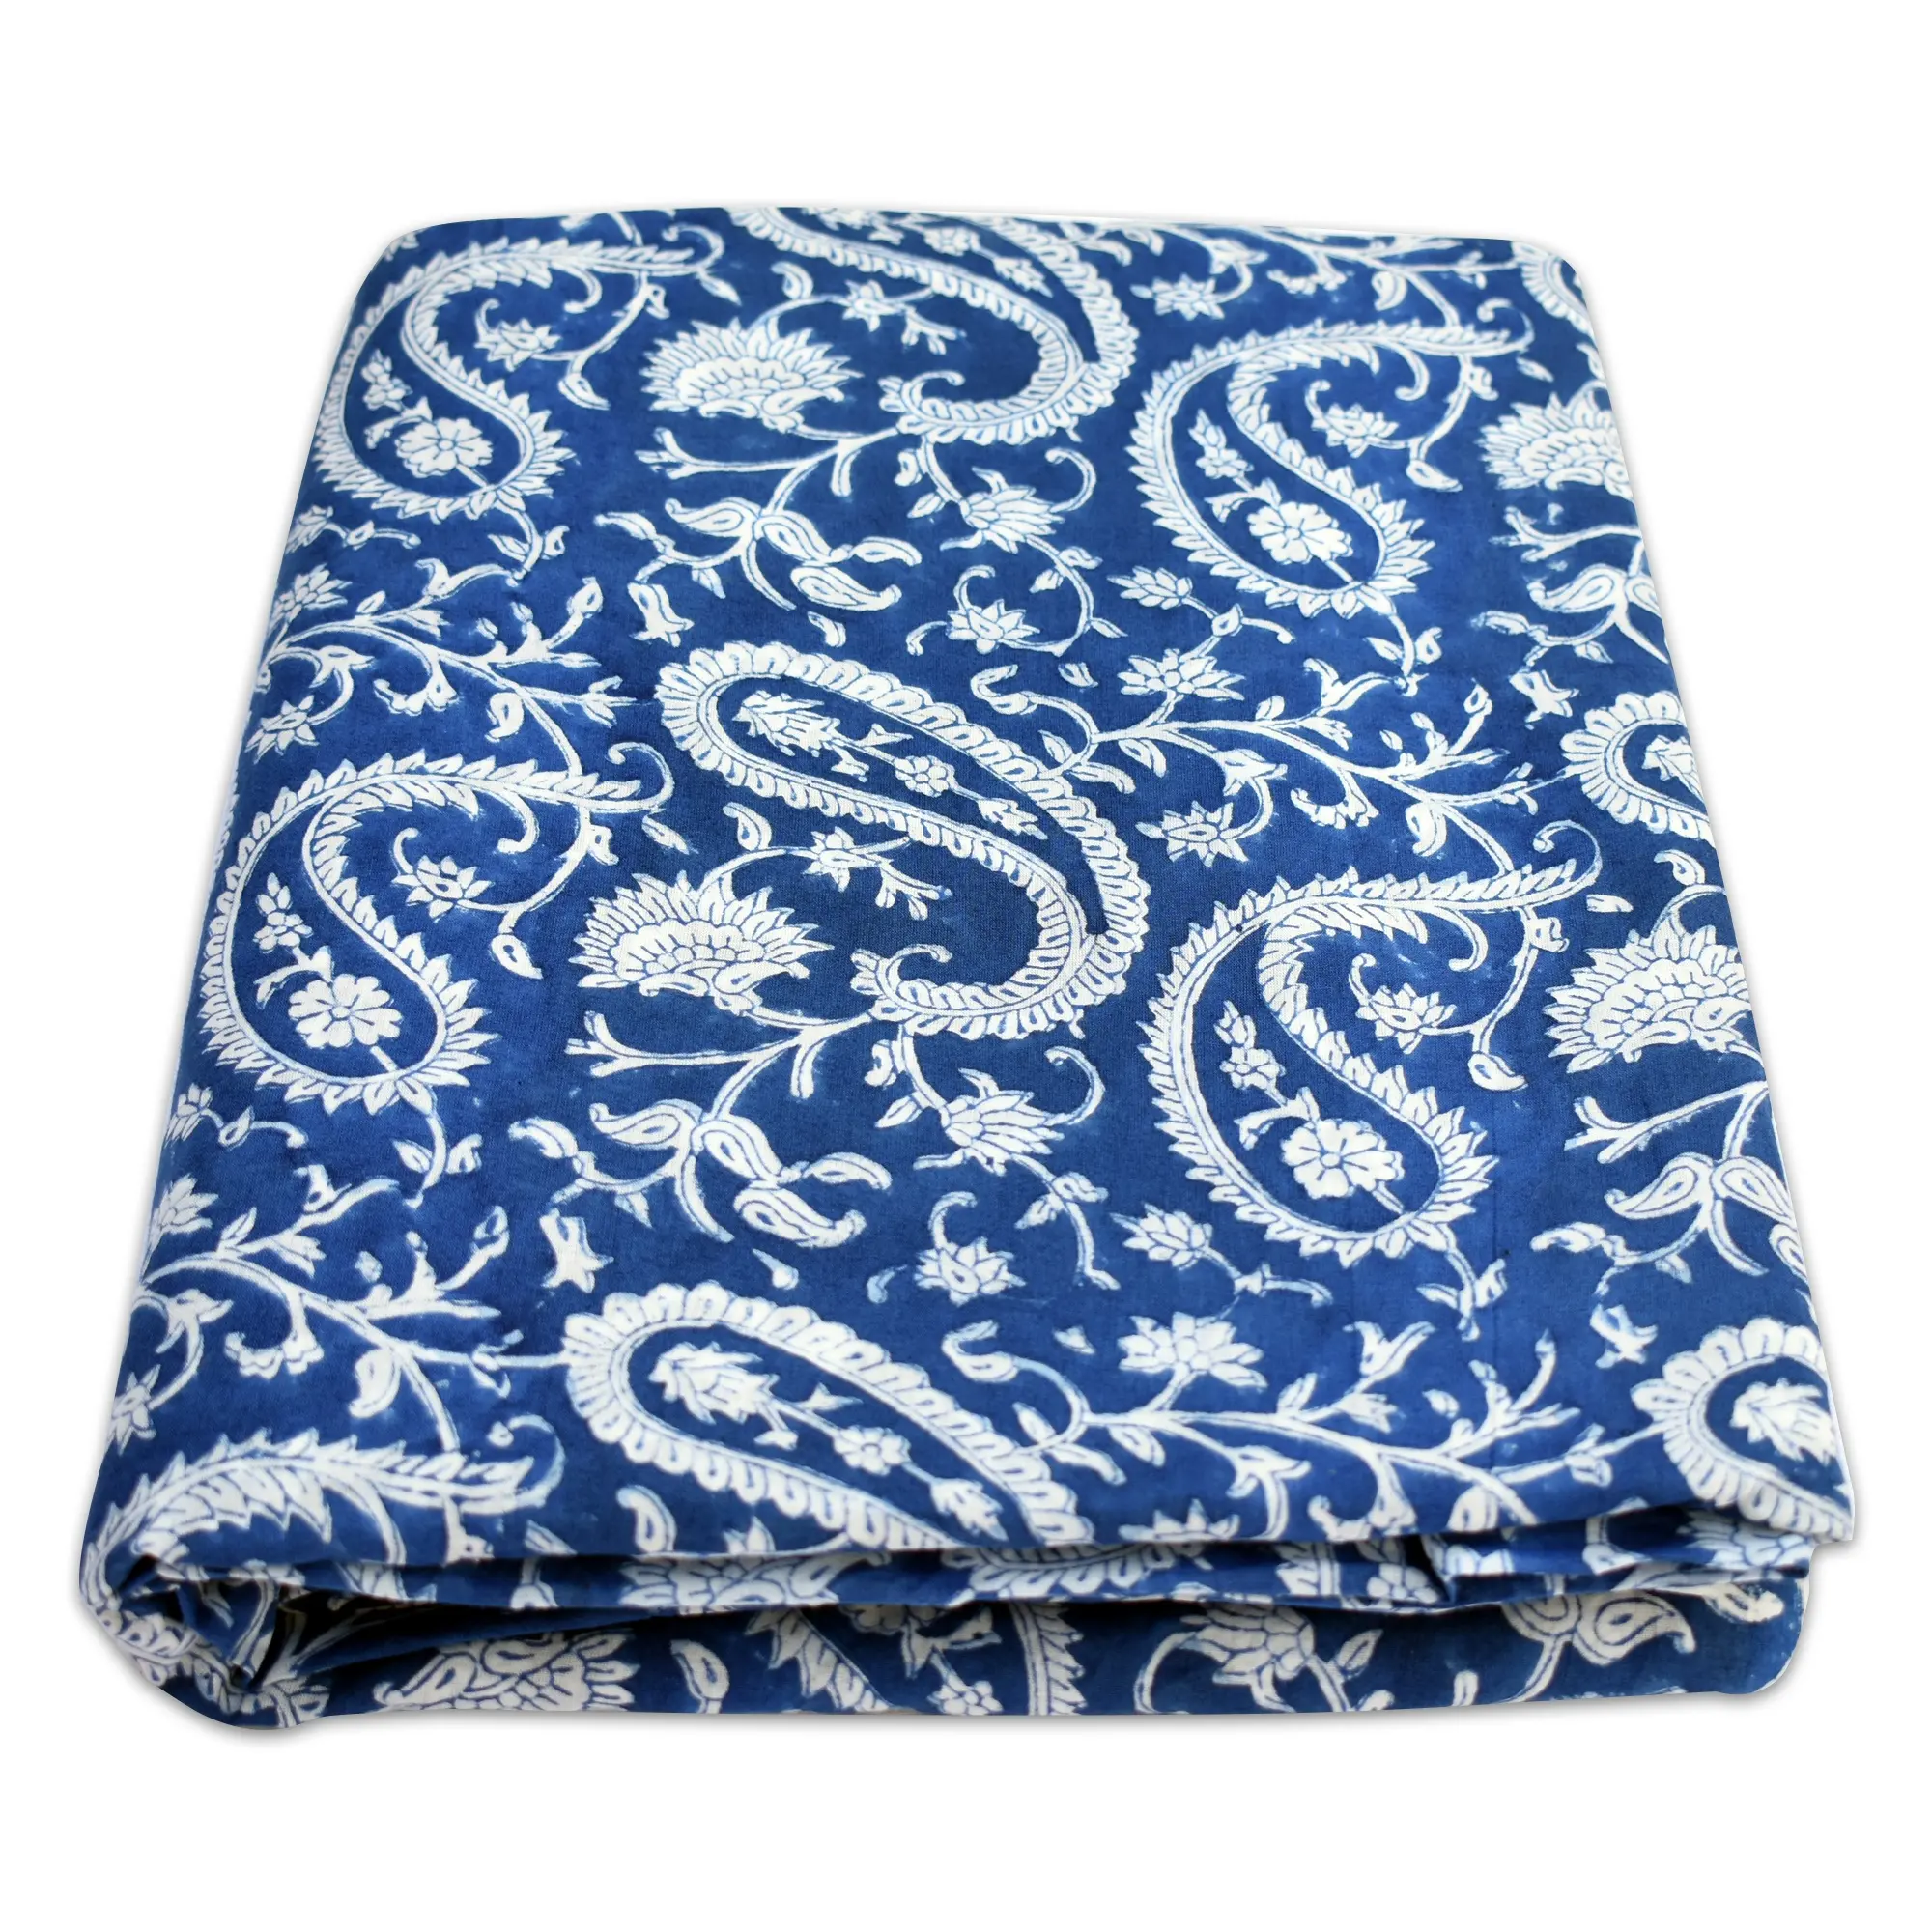 قماش بيسلي هندي مصبوغ يدويًا من القطن الطبيعي لقماش الملابس الأزرق الجميل فستان صناعة بالجملة